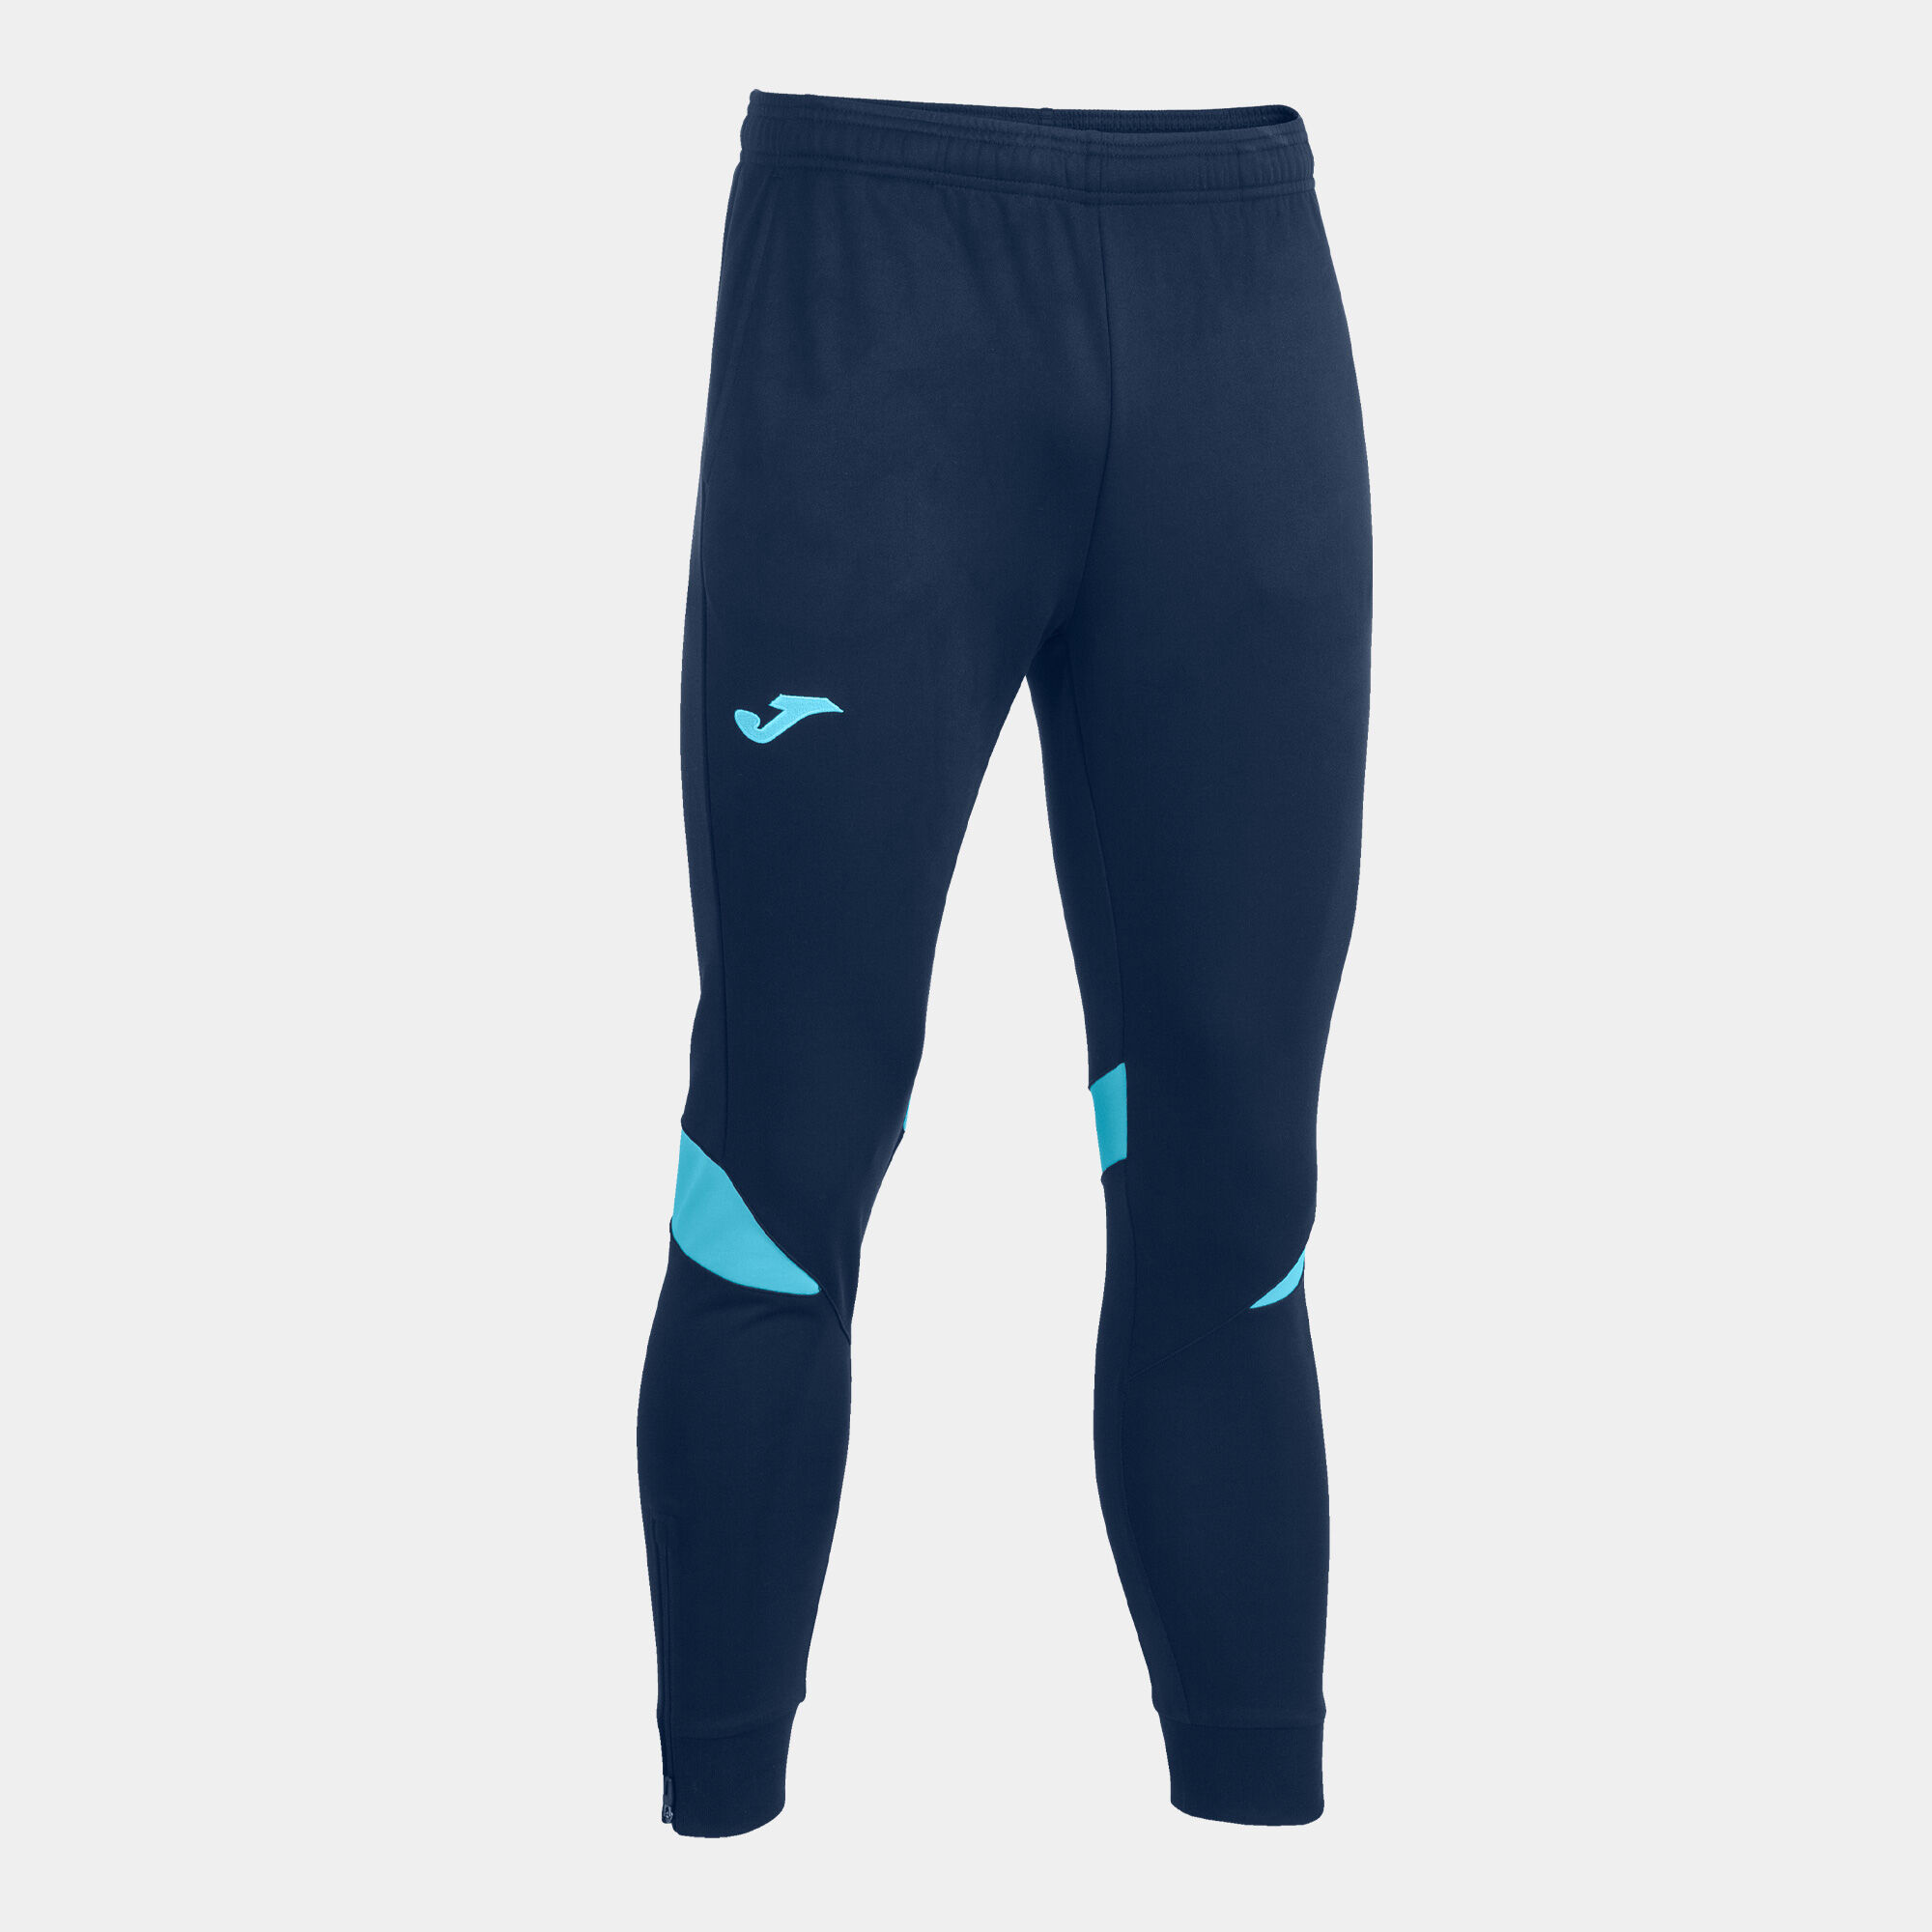 Pantalone lungo uomo Championship VI blu navy turchese fluorescente